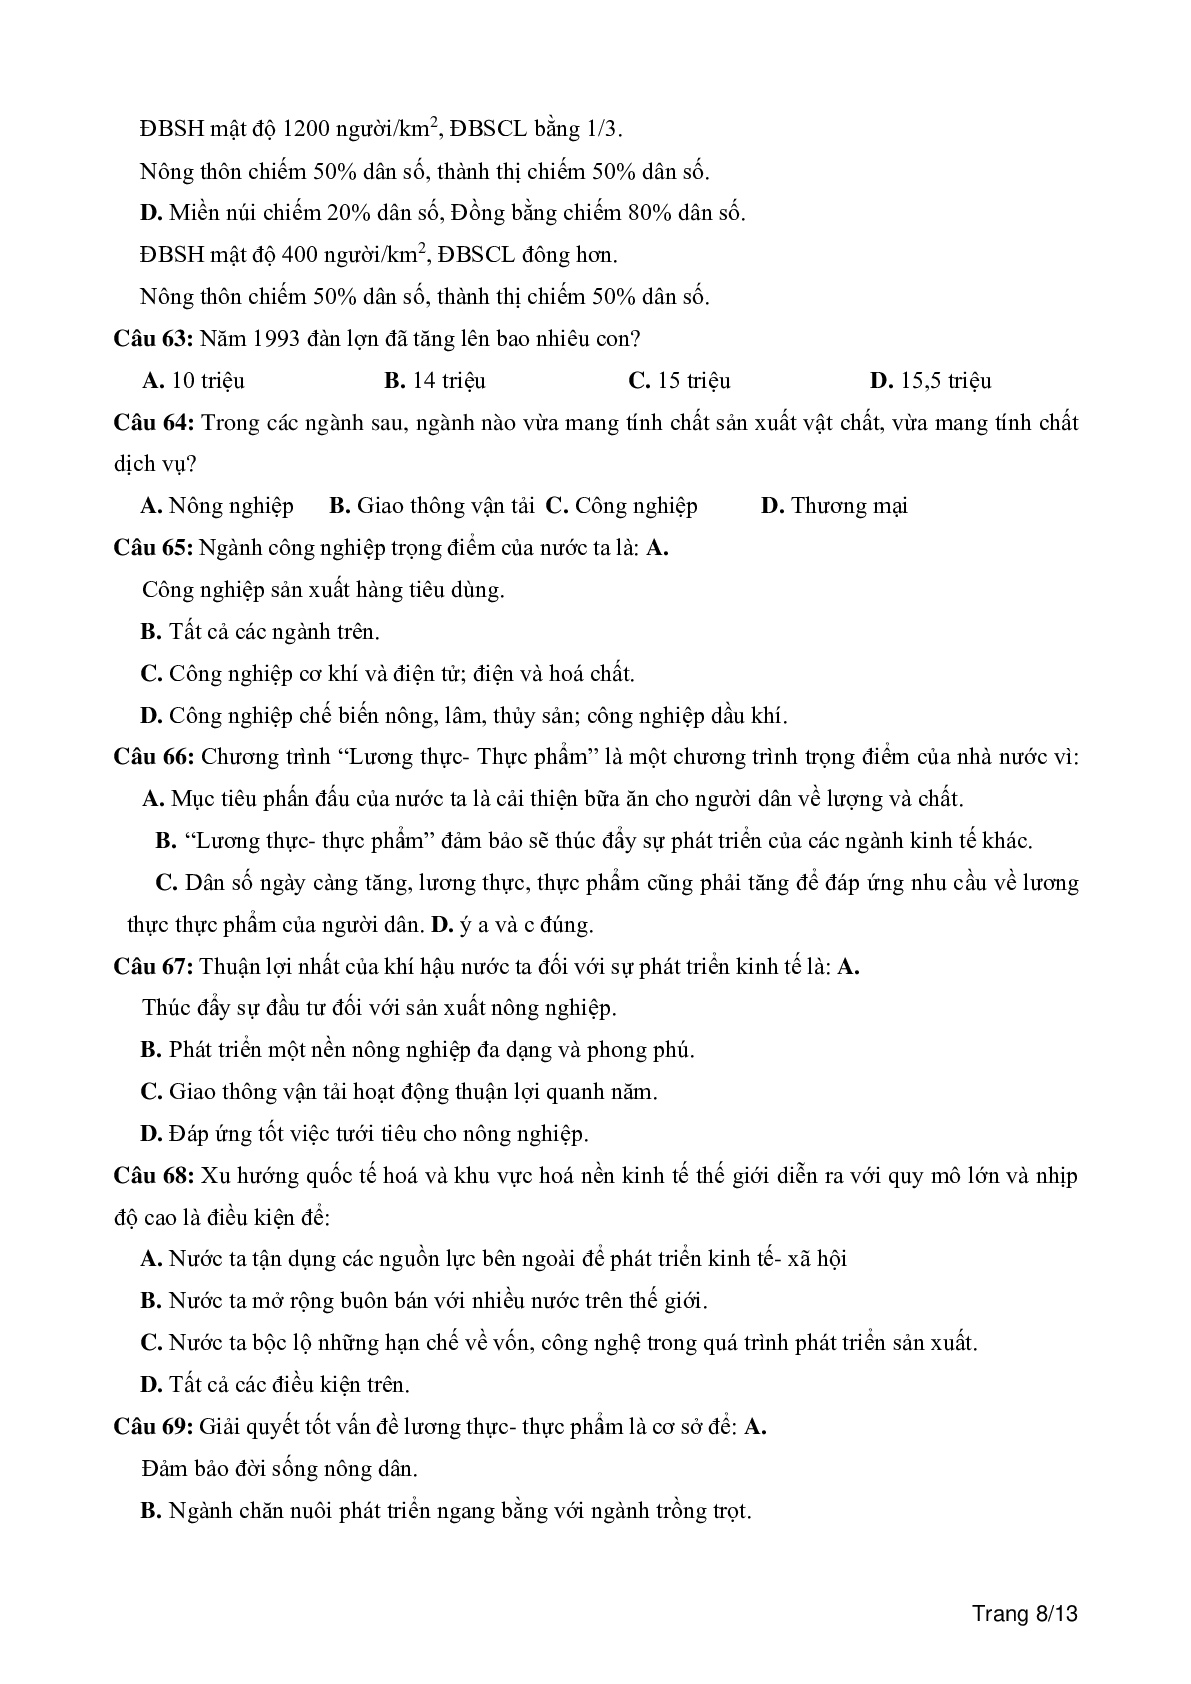 100 câu trắc nghiệm khách quan môn Địa lí lớp 12 (trang 8)